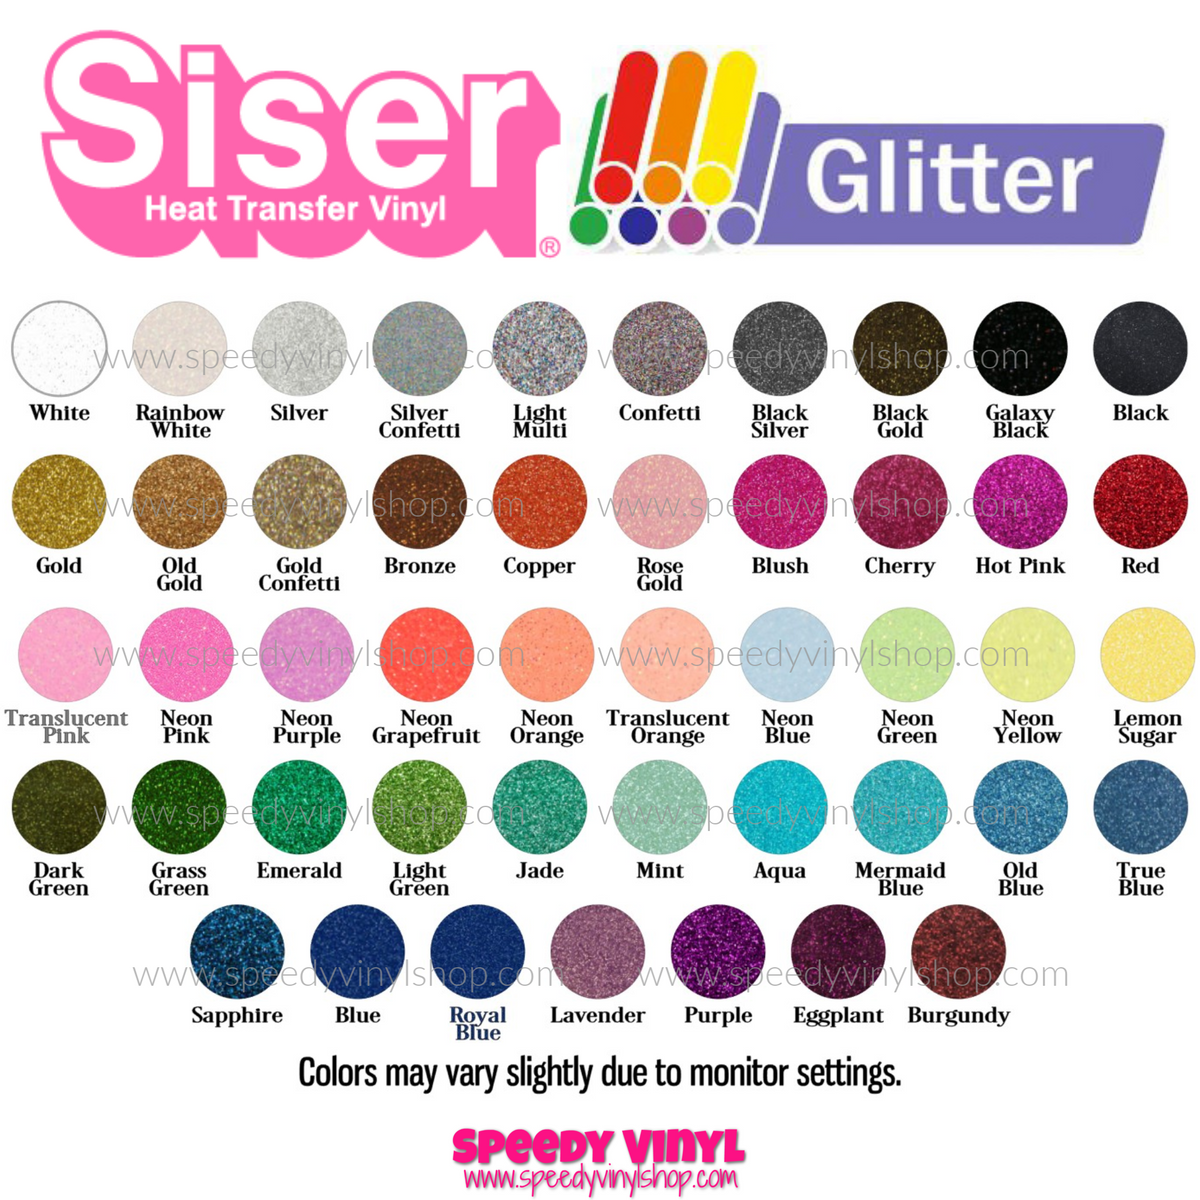 12 x 20))) Siser Glitter HTV Heat Transfer Vinyl Sheets – Speedy